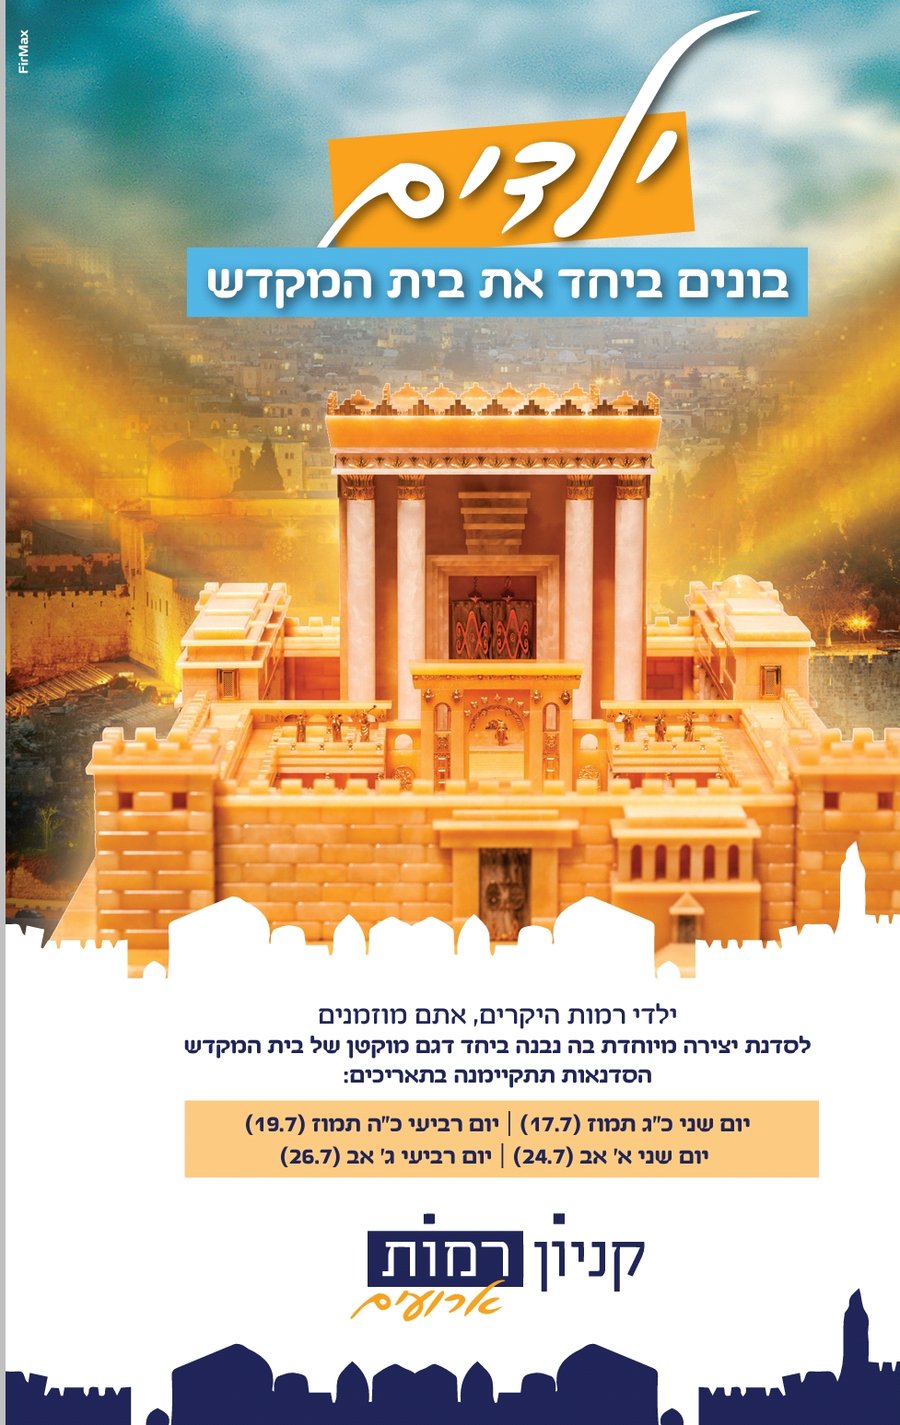 דגם בית המקדש נבנה על ידי ילדי ירושלים